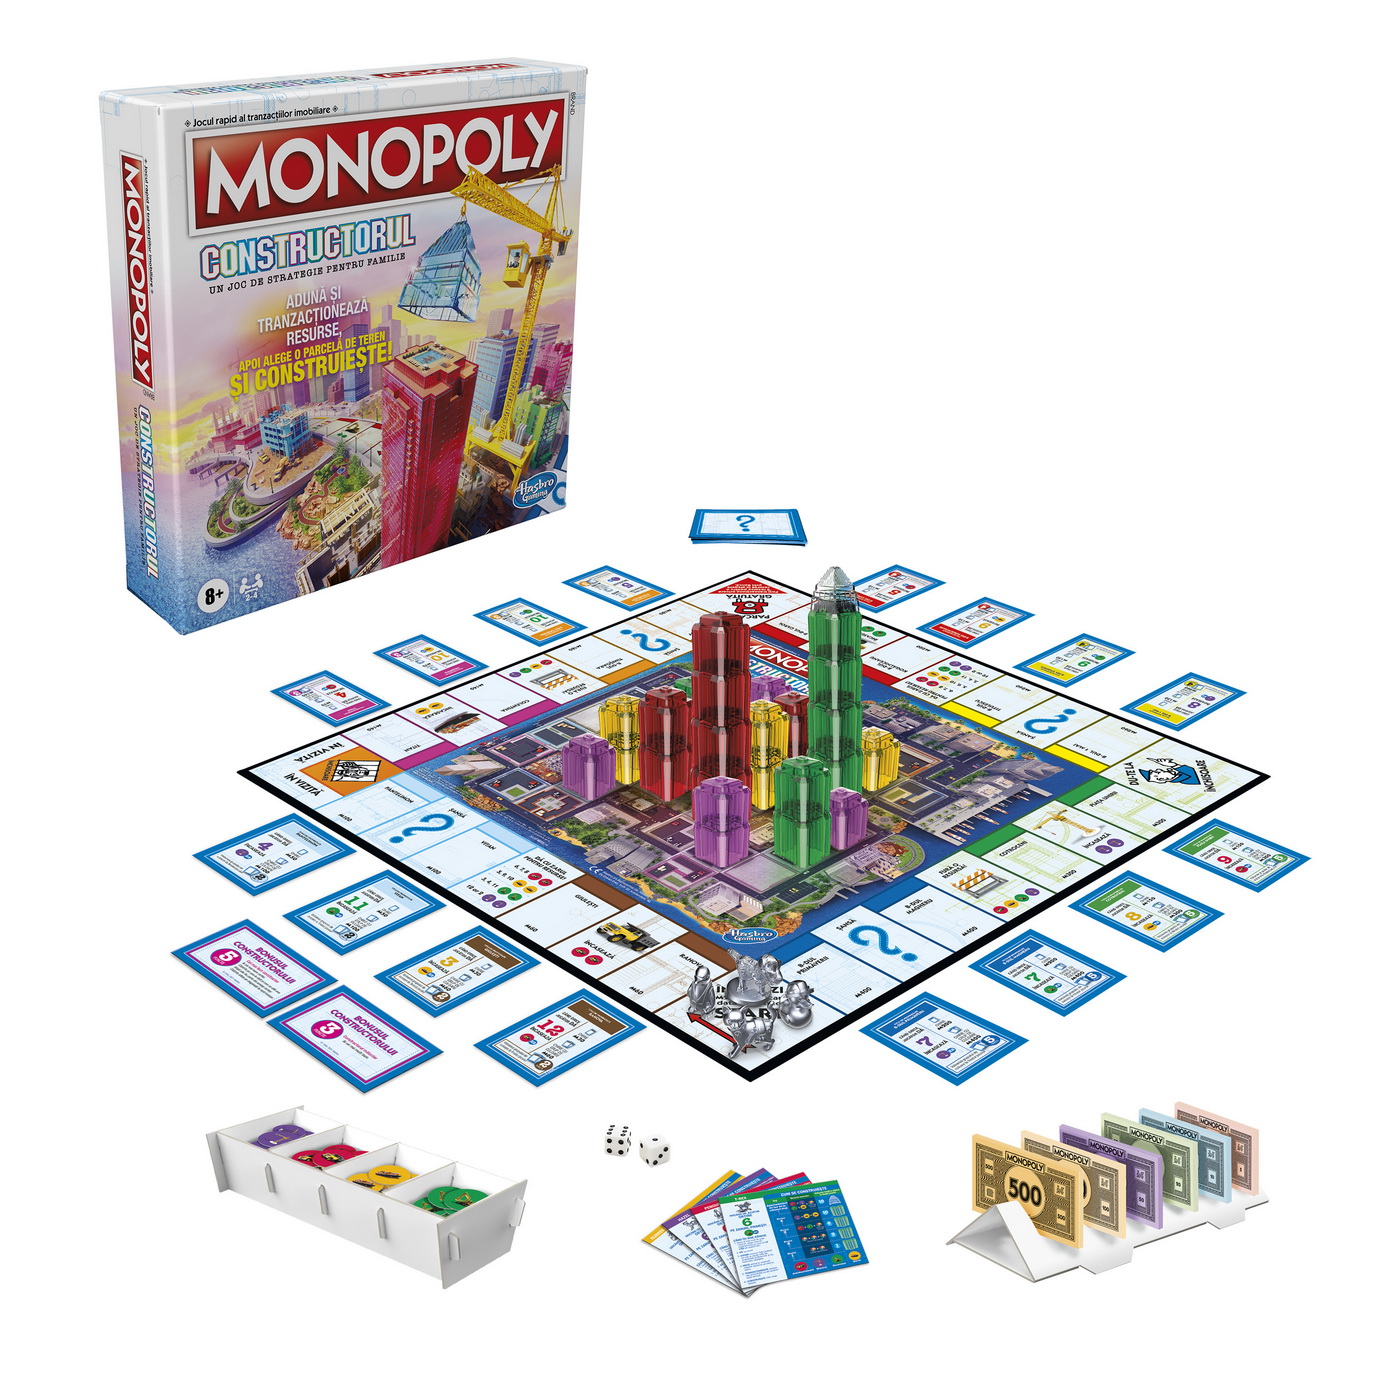 Monopoly Constructorul | Hasbro - 3